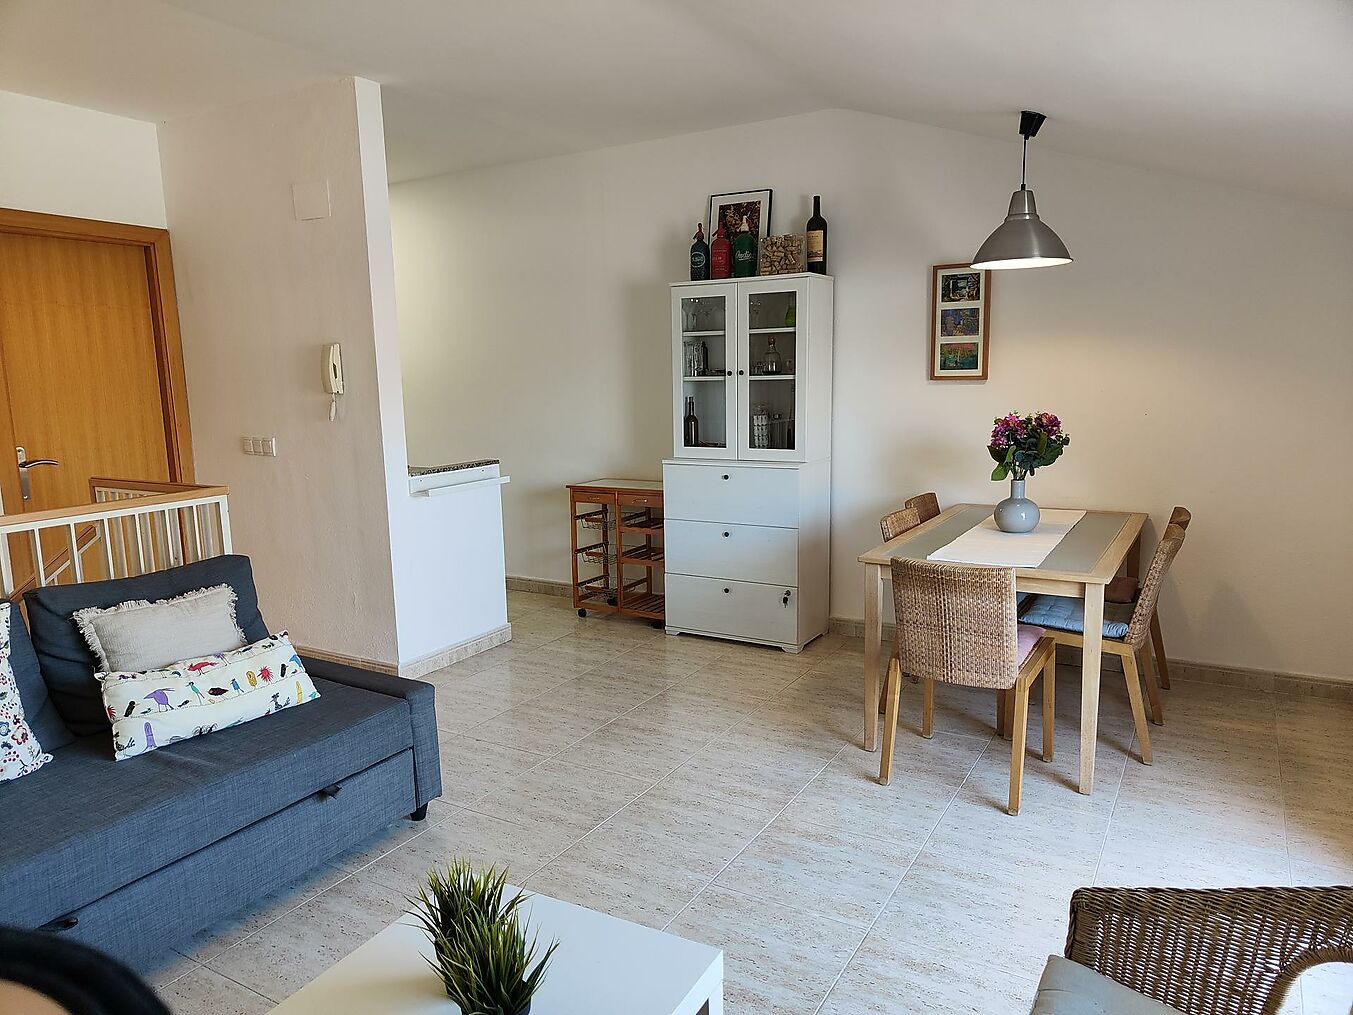 Apartament tipus dúplex situat a segona línia de mar al centre de Sant Antoni